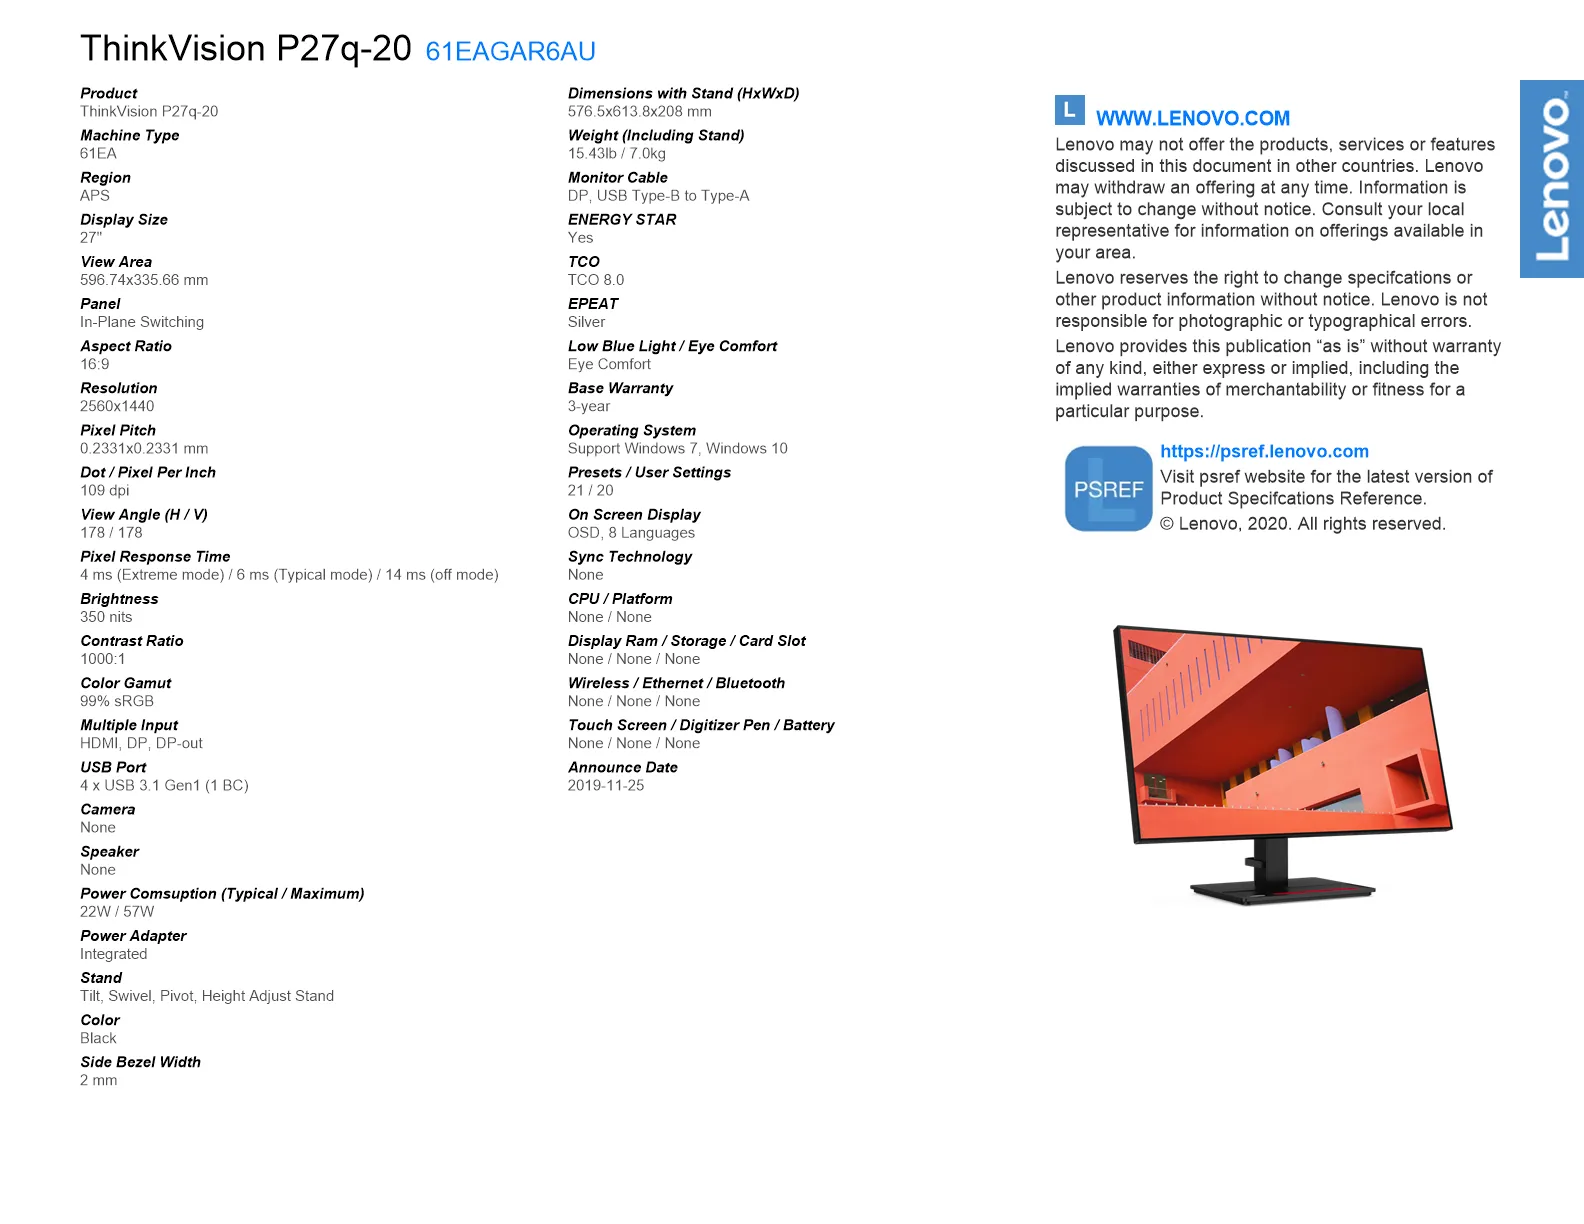 ThinkVision P27q-20 27 QHD Monitor